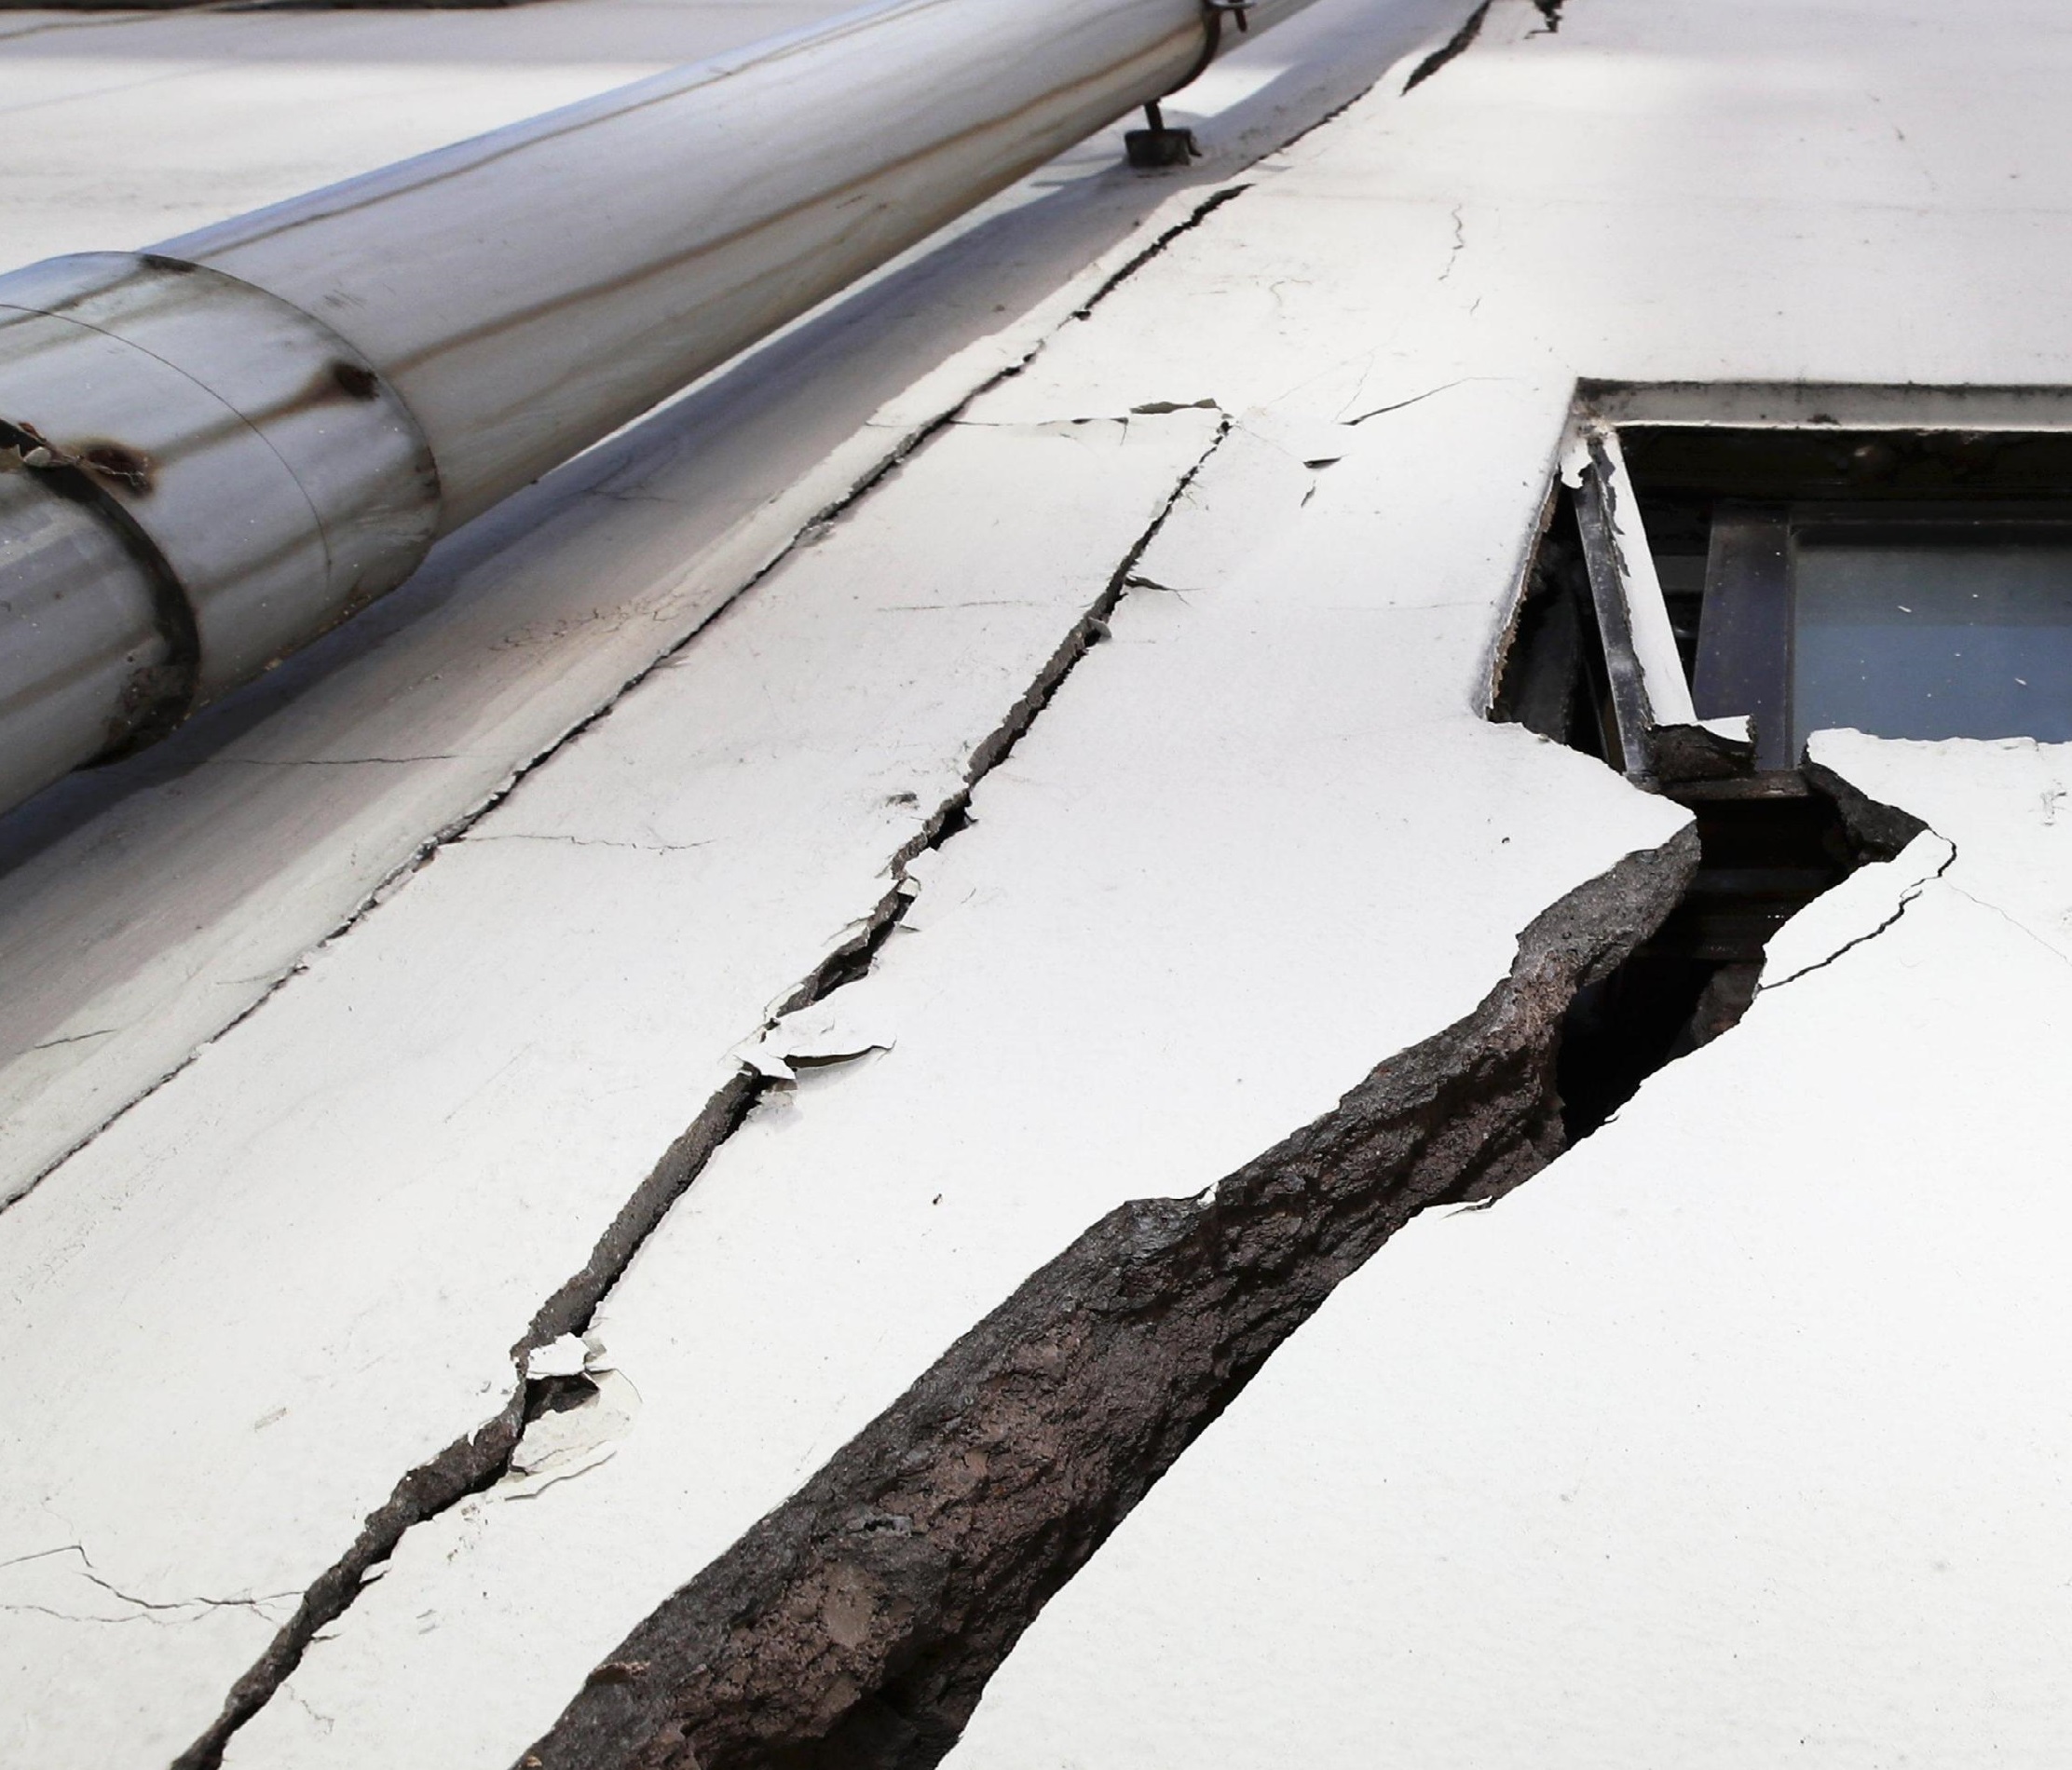 La forza della scossa ha provocato profonde crepe sui muri degli edifici che non sono crollati